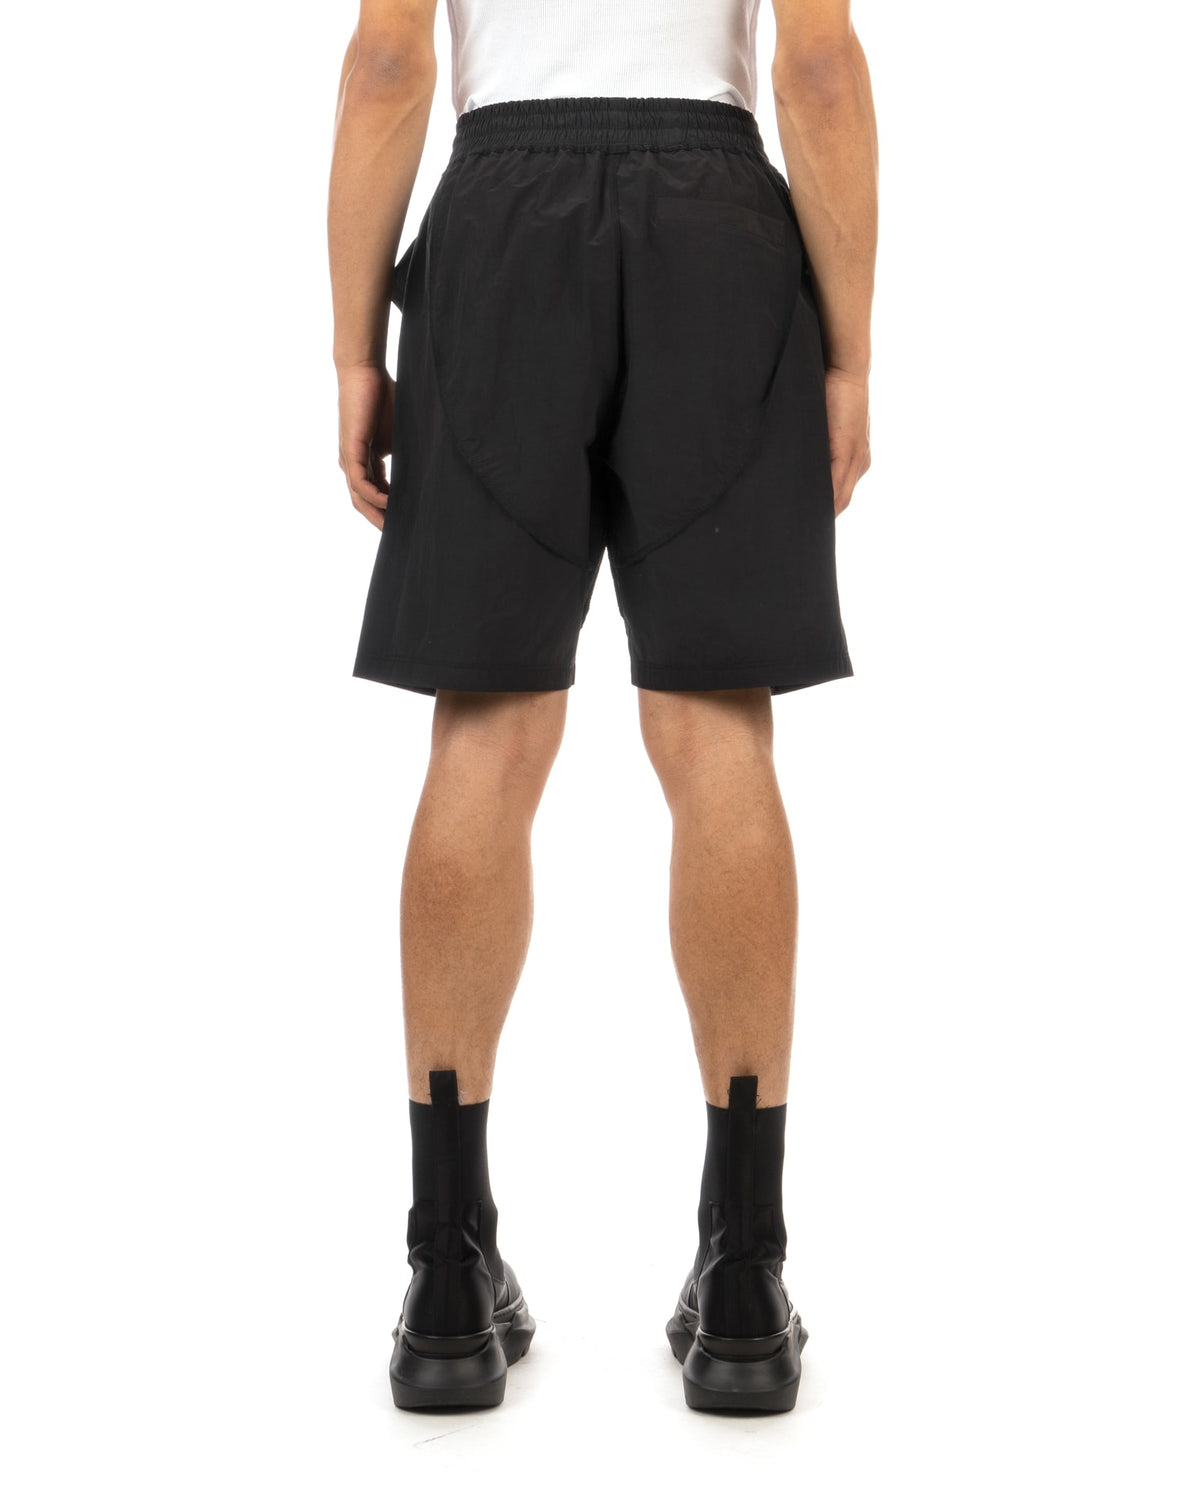 asparagus_ | Buckle Cube Pocket Inside-Out Shorts Black - Concrete